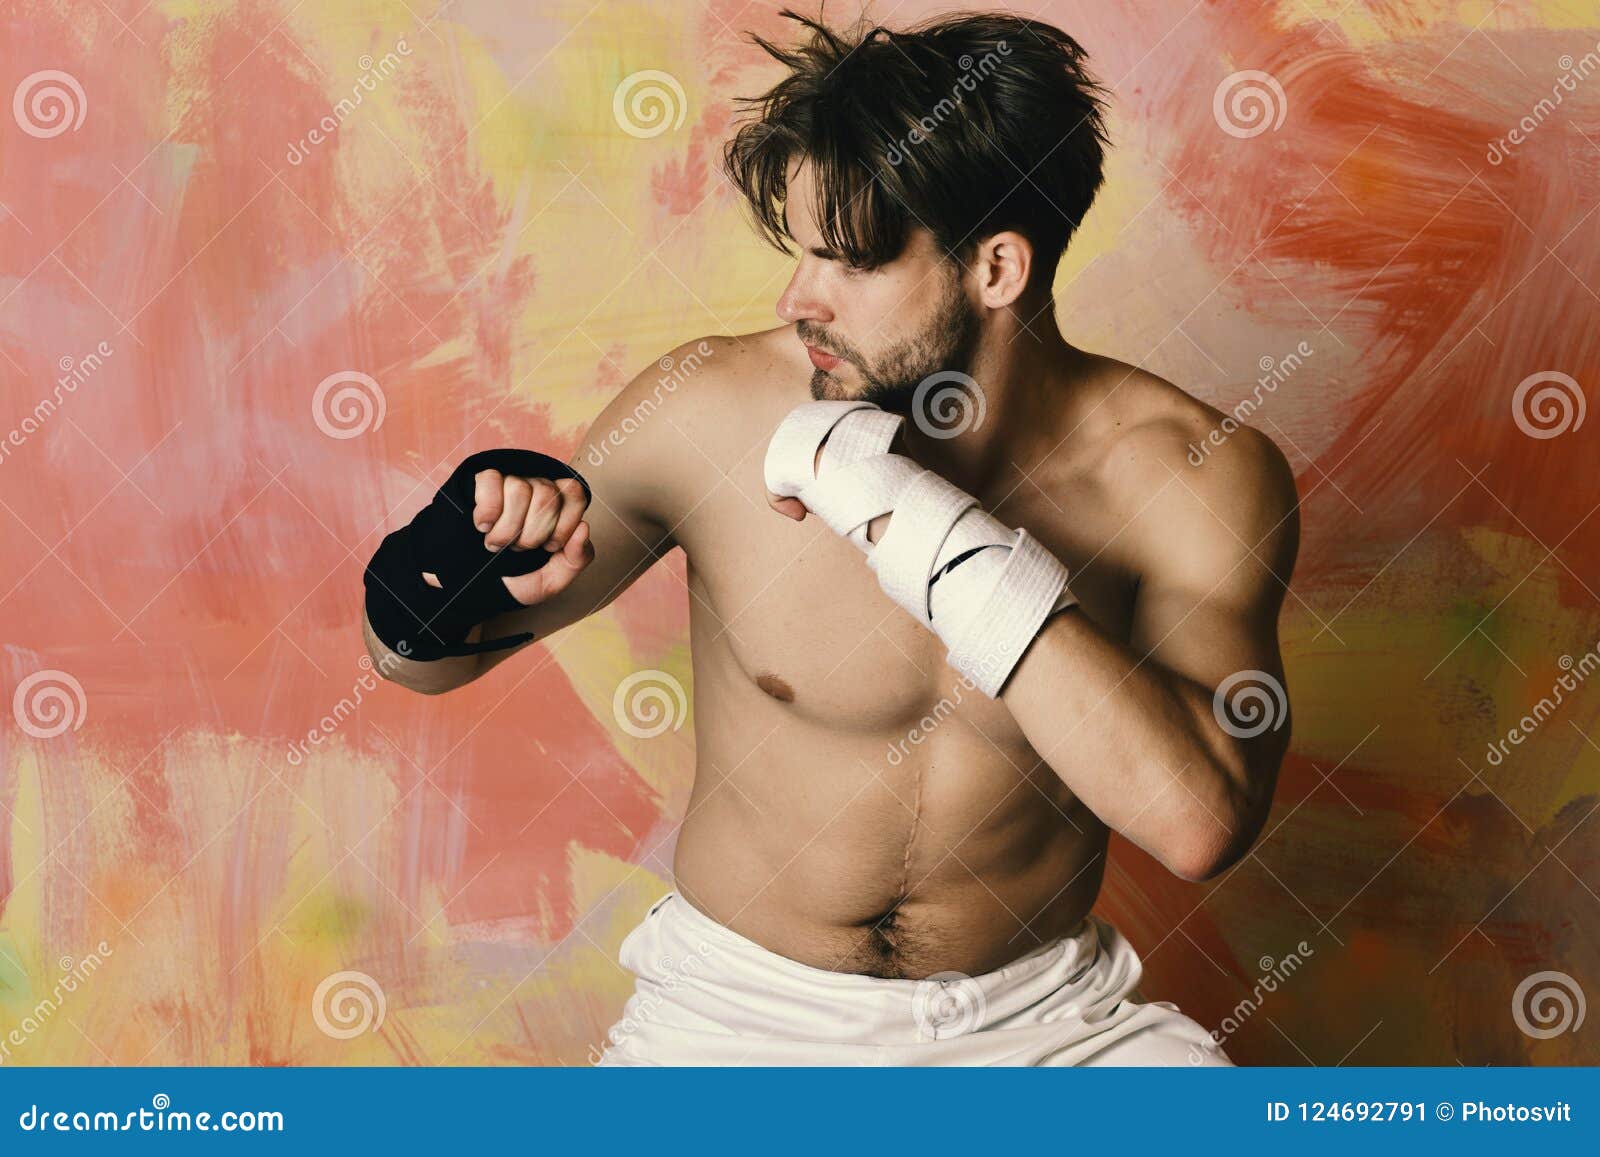 Torso Boxeo Y Artes Marciales